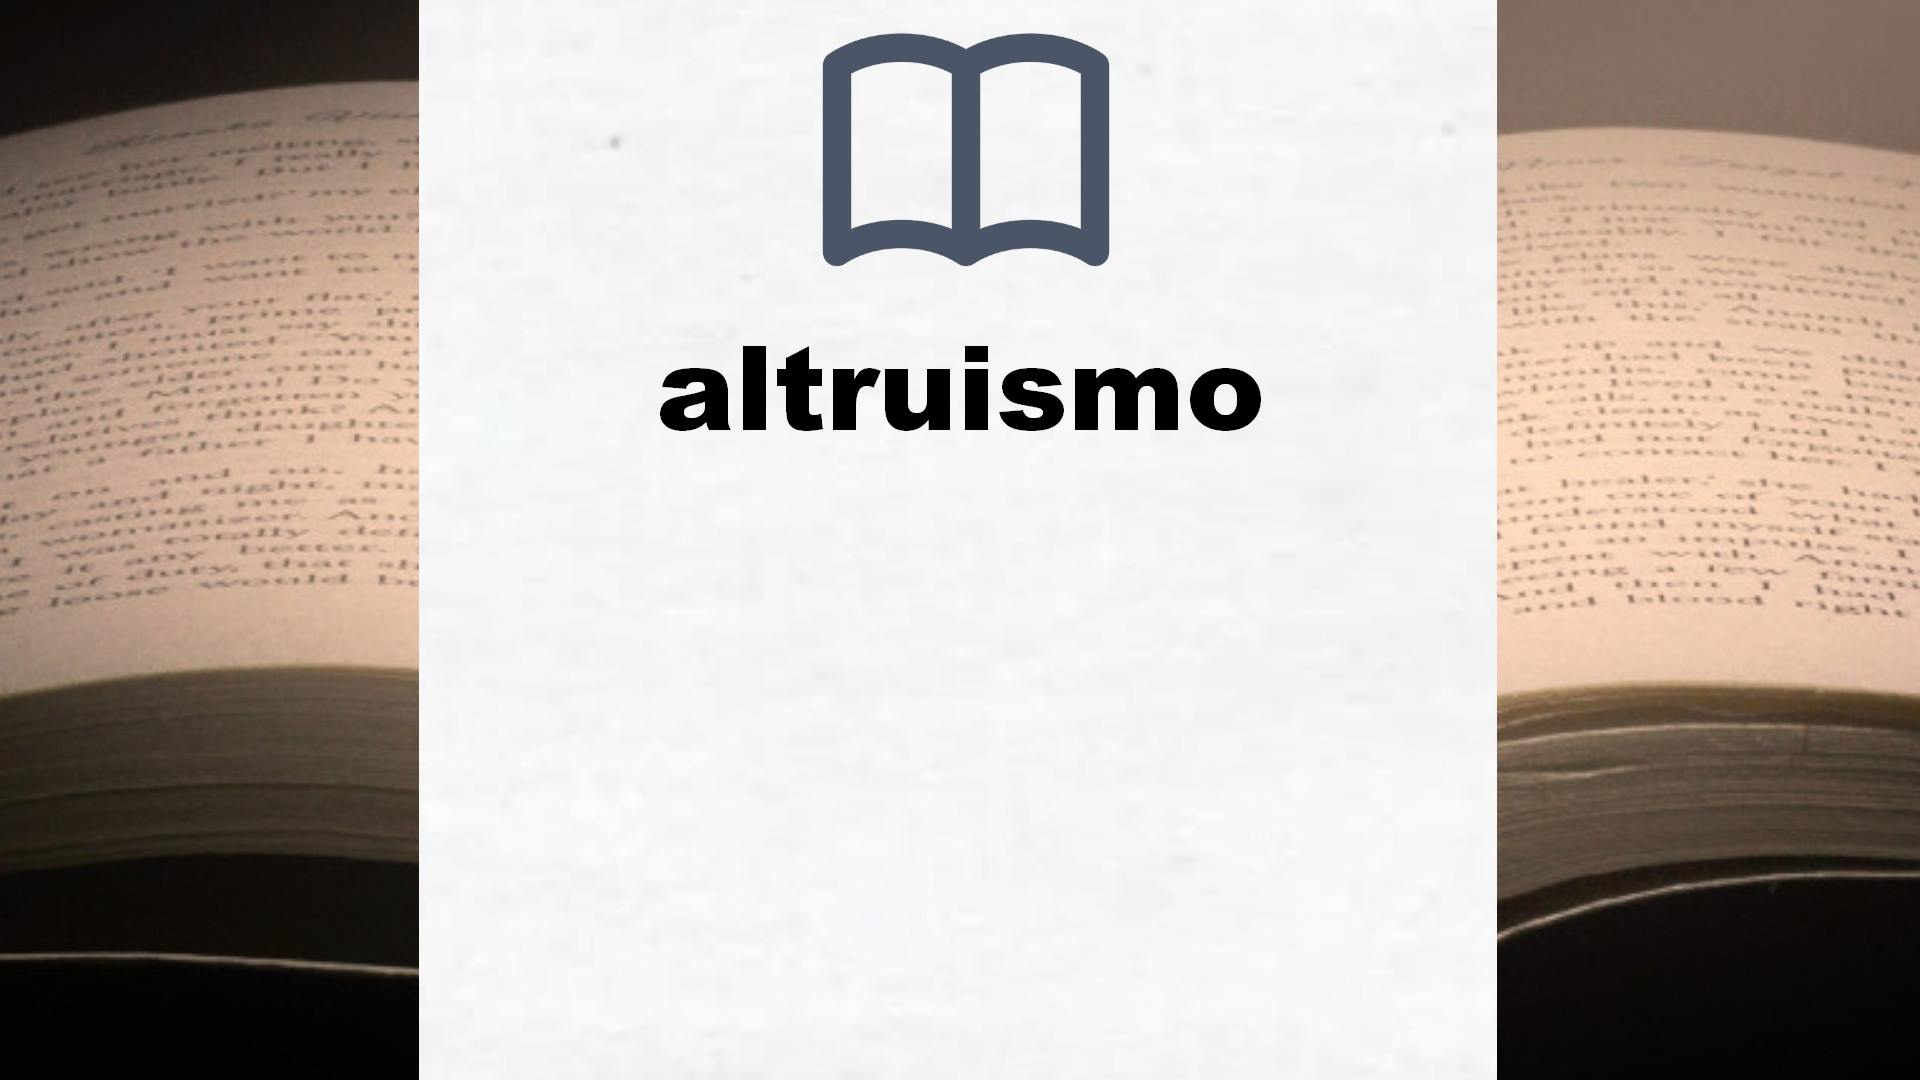 Libros sobre altruismo